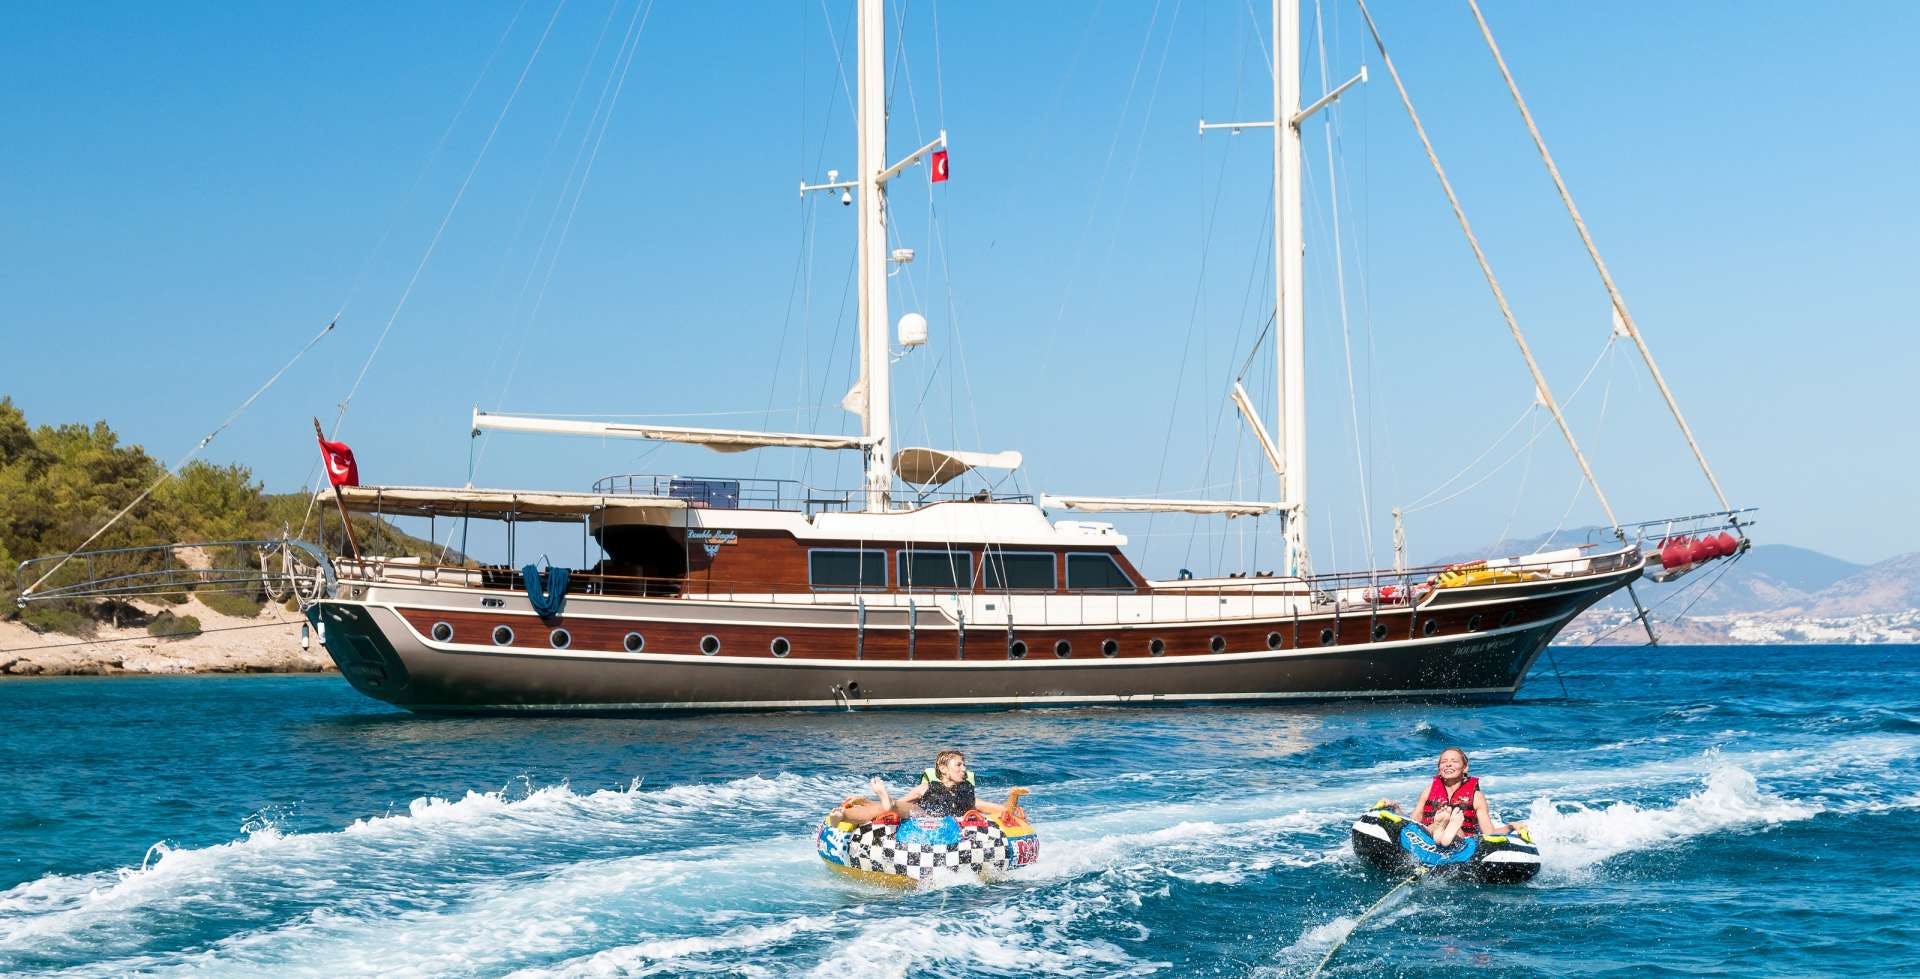 double eagle - Motor Boat Charter worldwide & Boat hire in Greece & Turkey 1